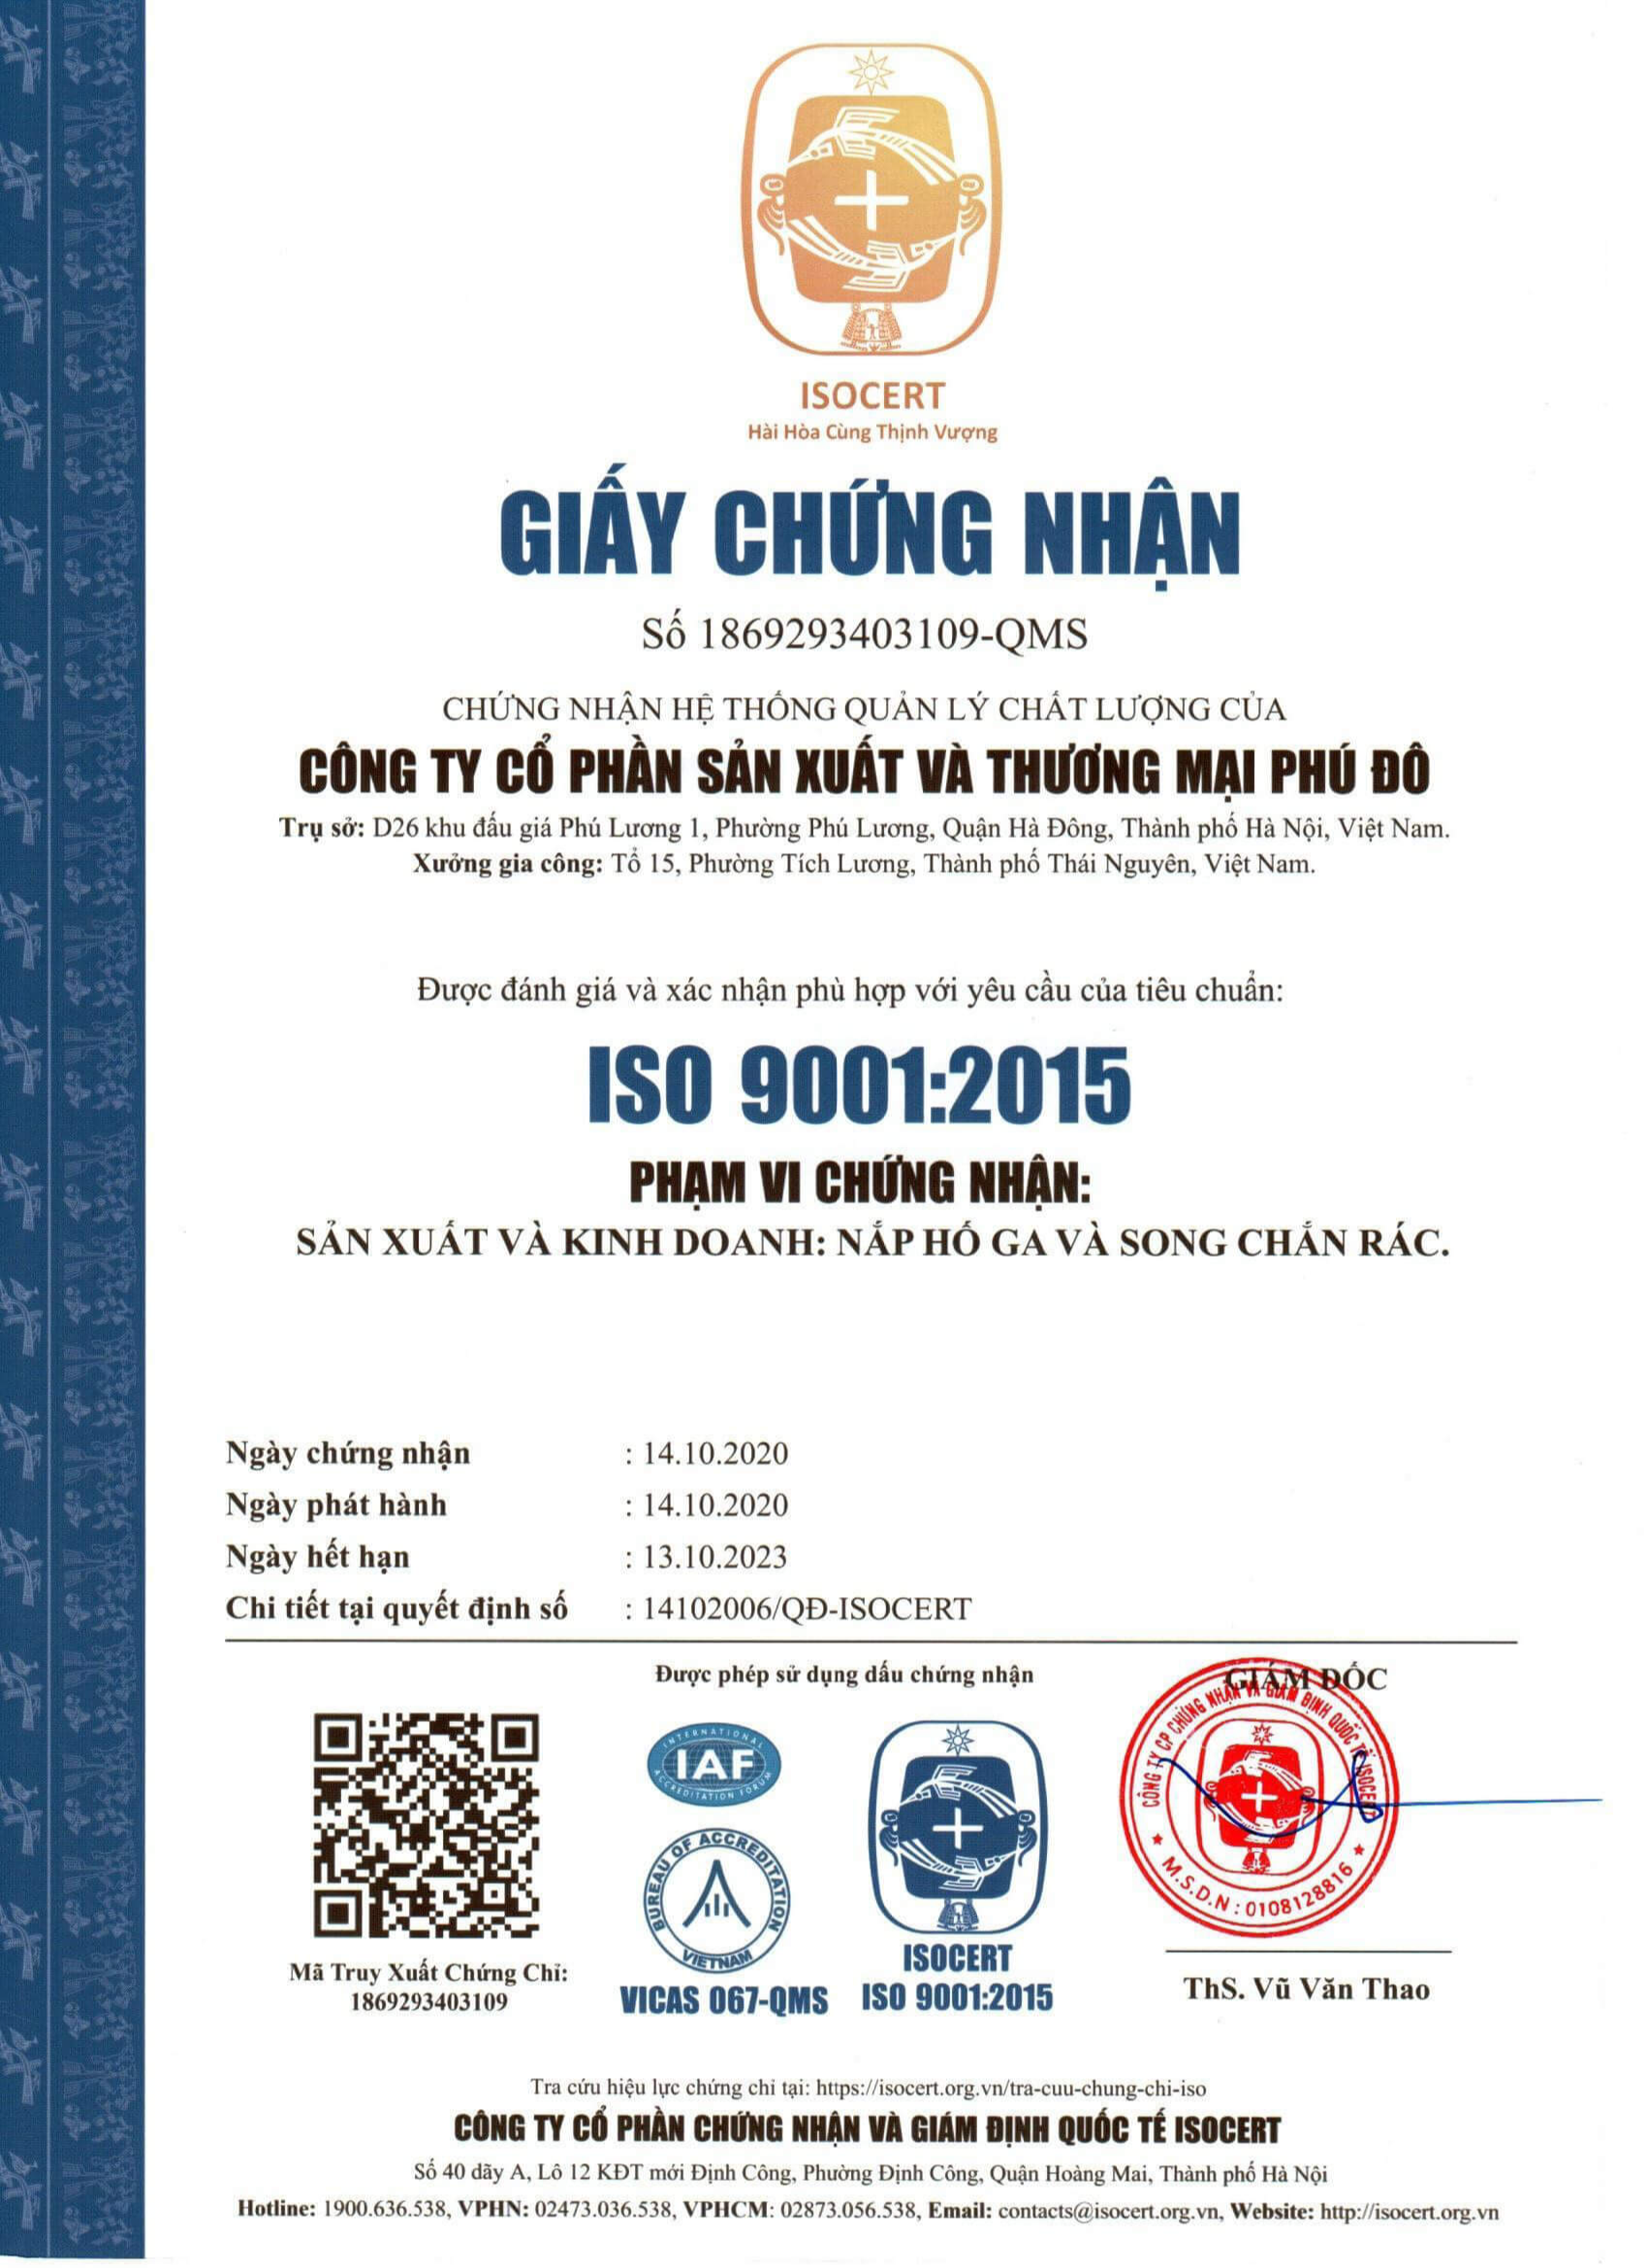 Đạt tiêu chuẩn iso 9001-2015 trong sản xuất Nắp hố ga, song chắn rác.